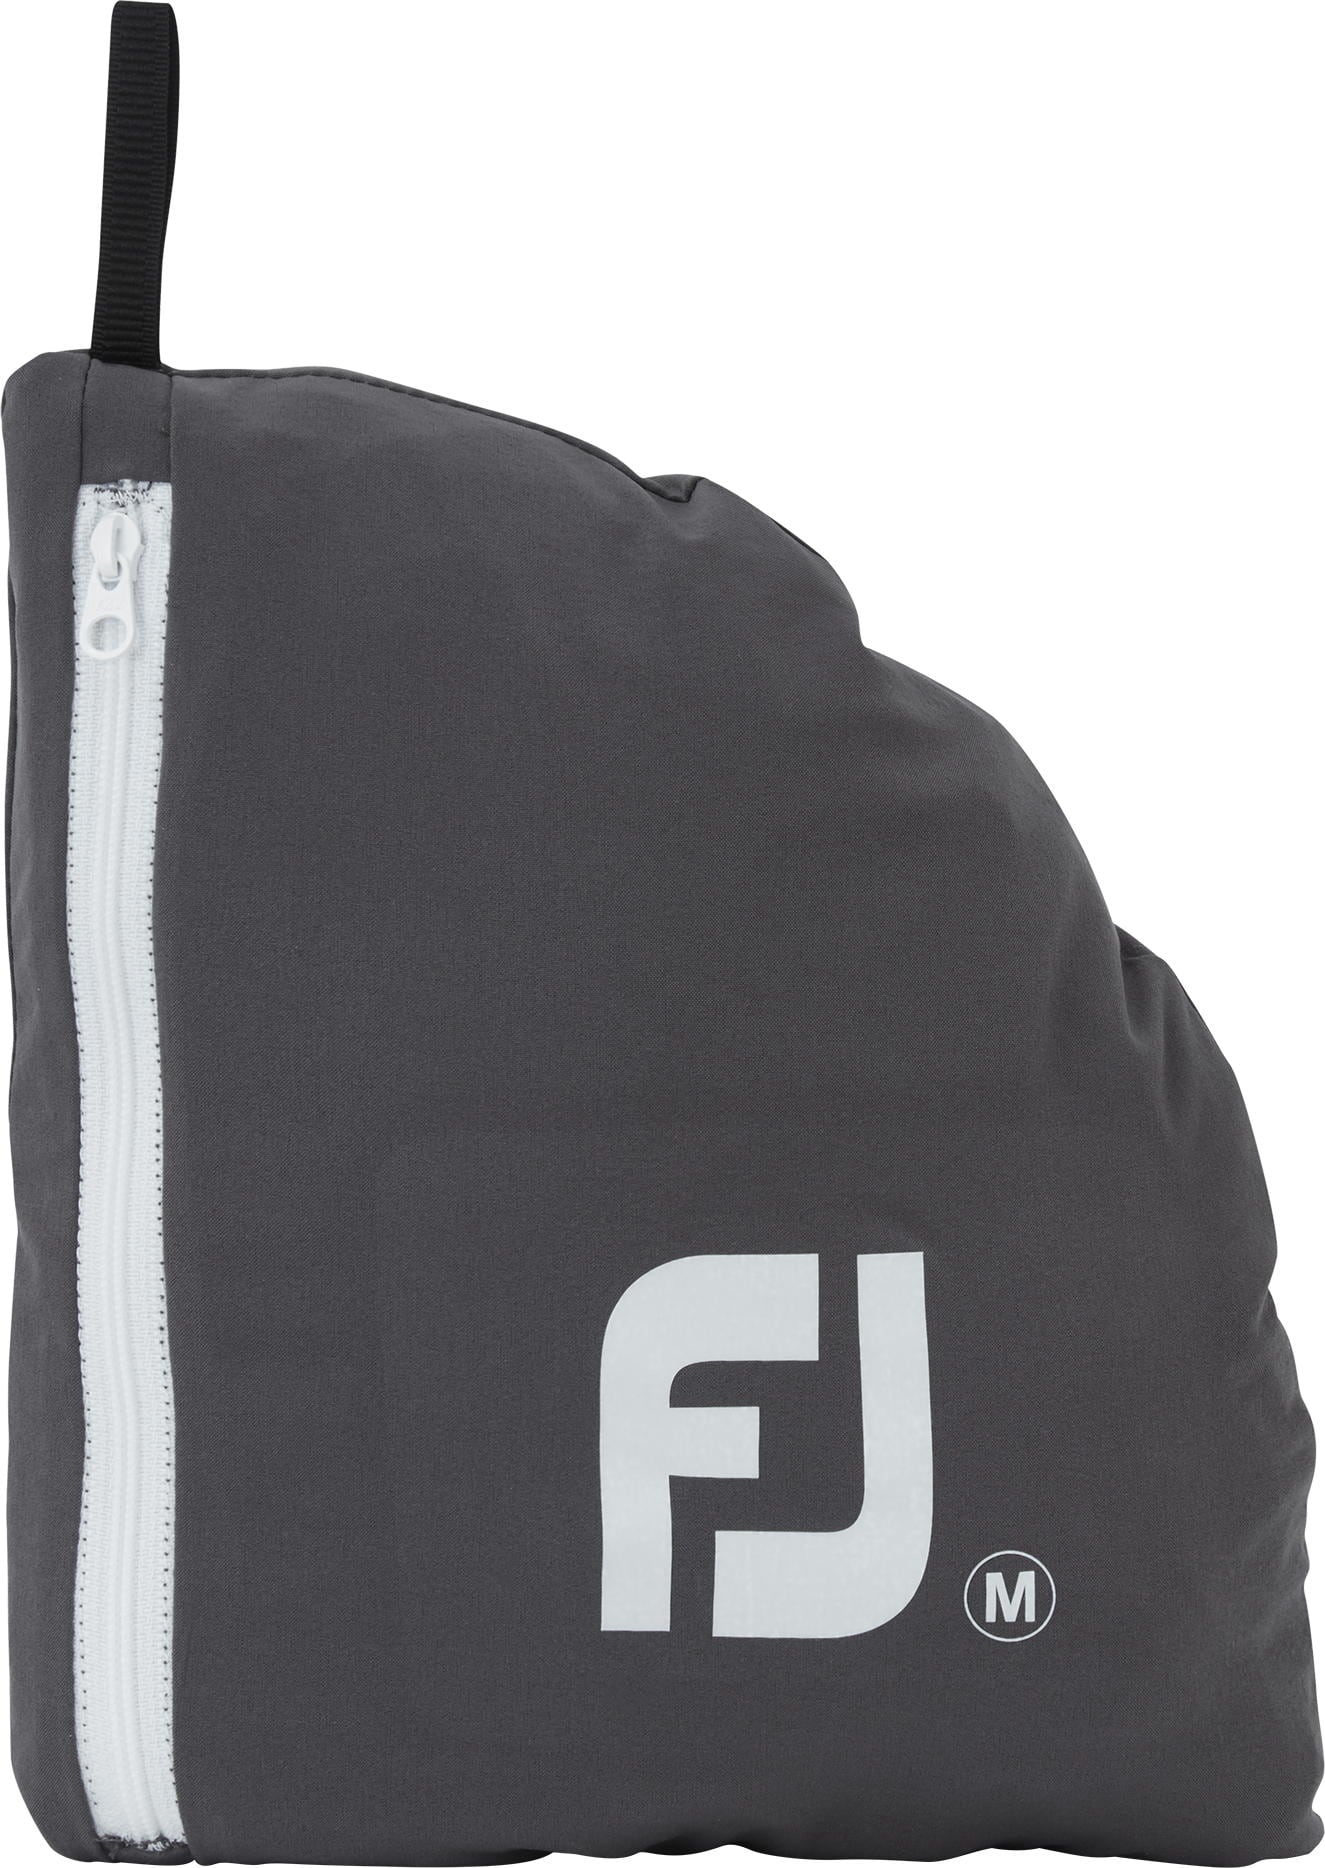 FootJoy Elements Packable Regenjacke, black/charcoal/white